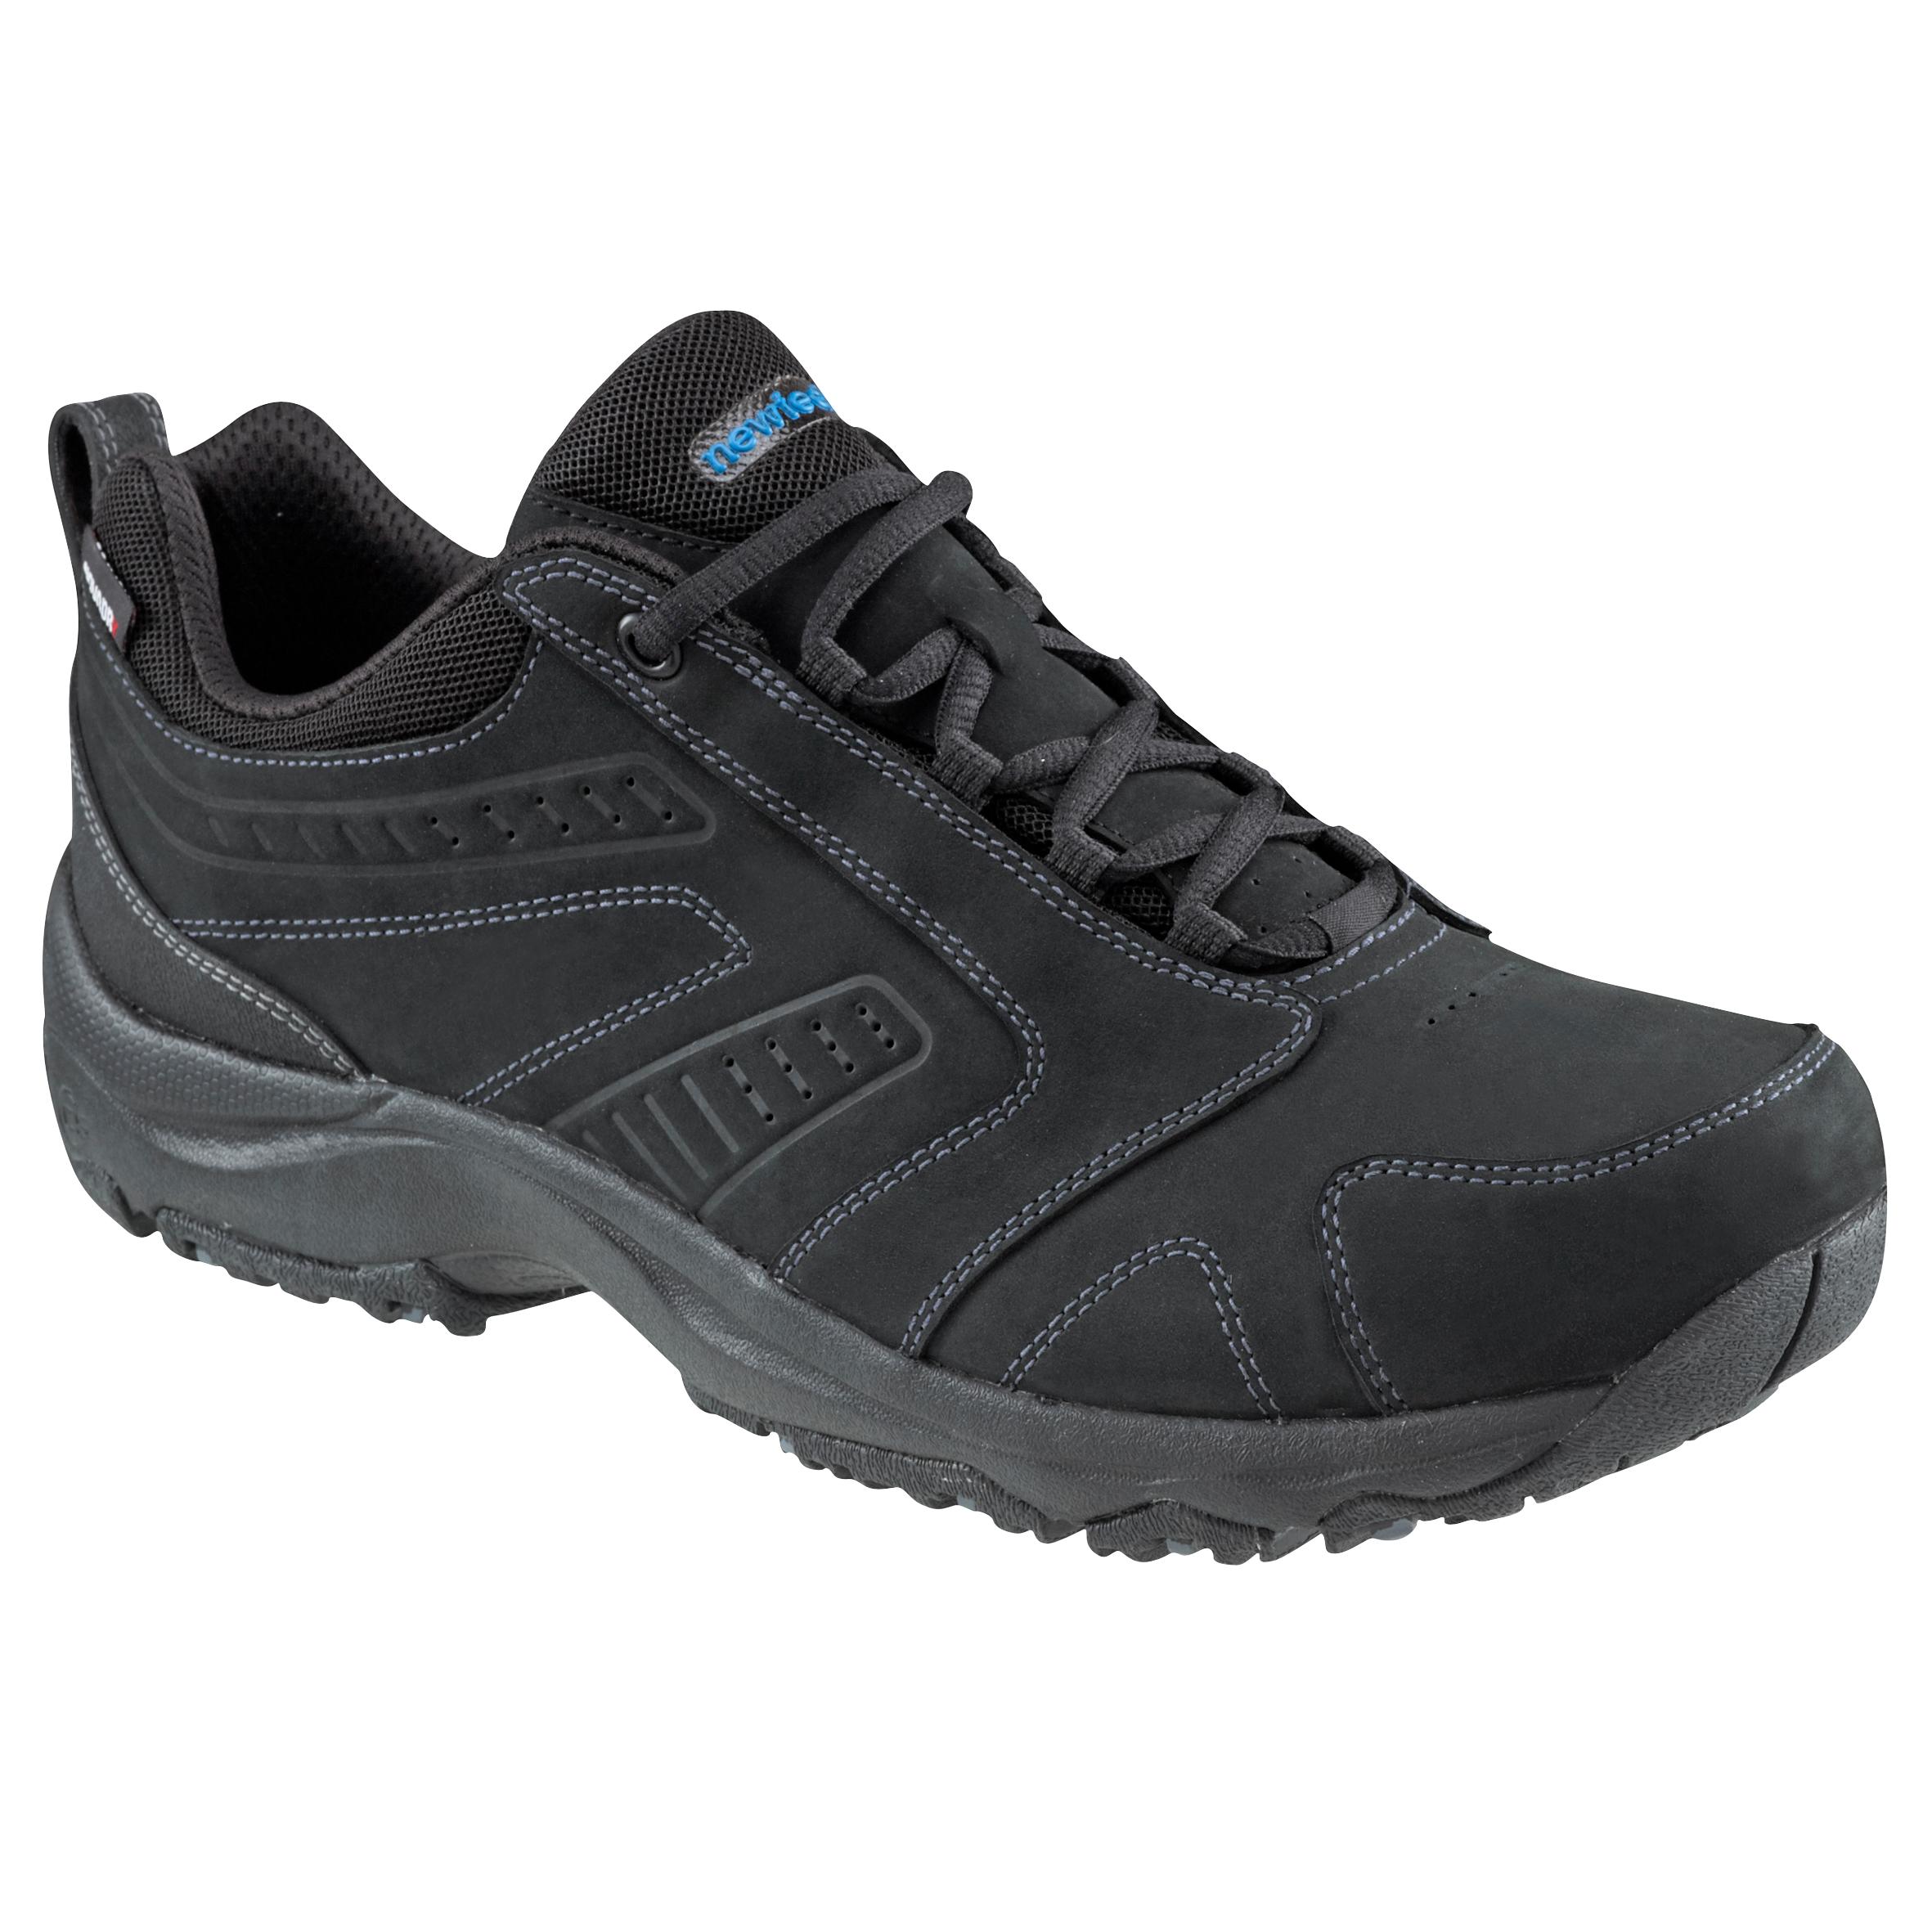 Nakuru Waterproof Men's Urban Waterproof Walking Shoes - Black Leather 25/25